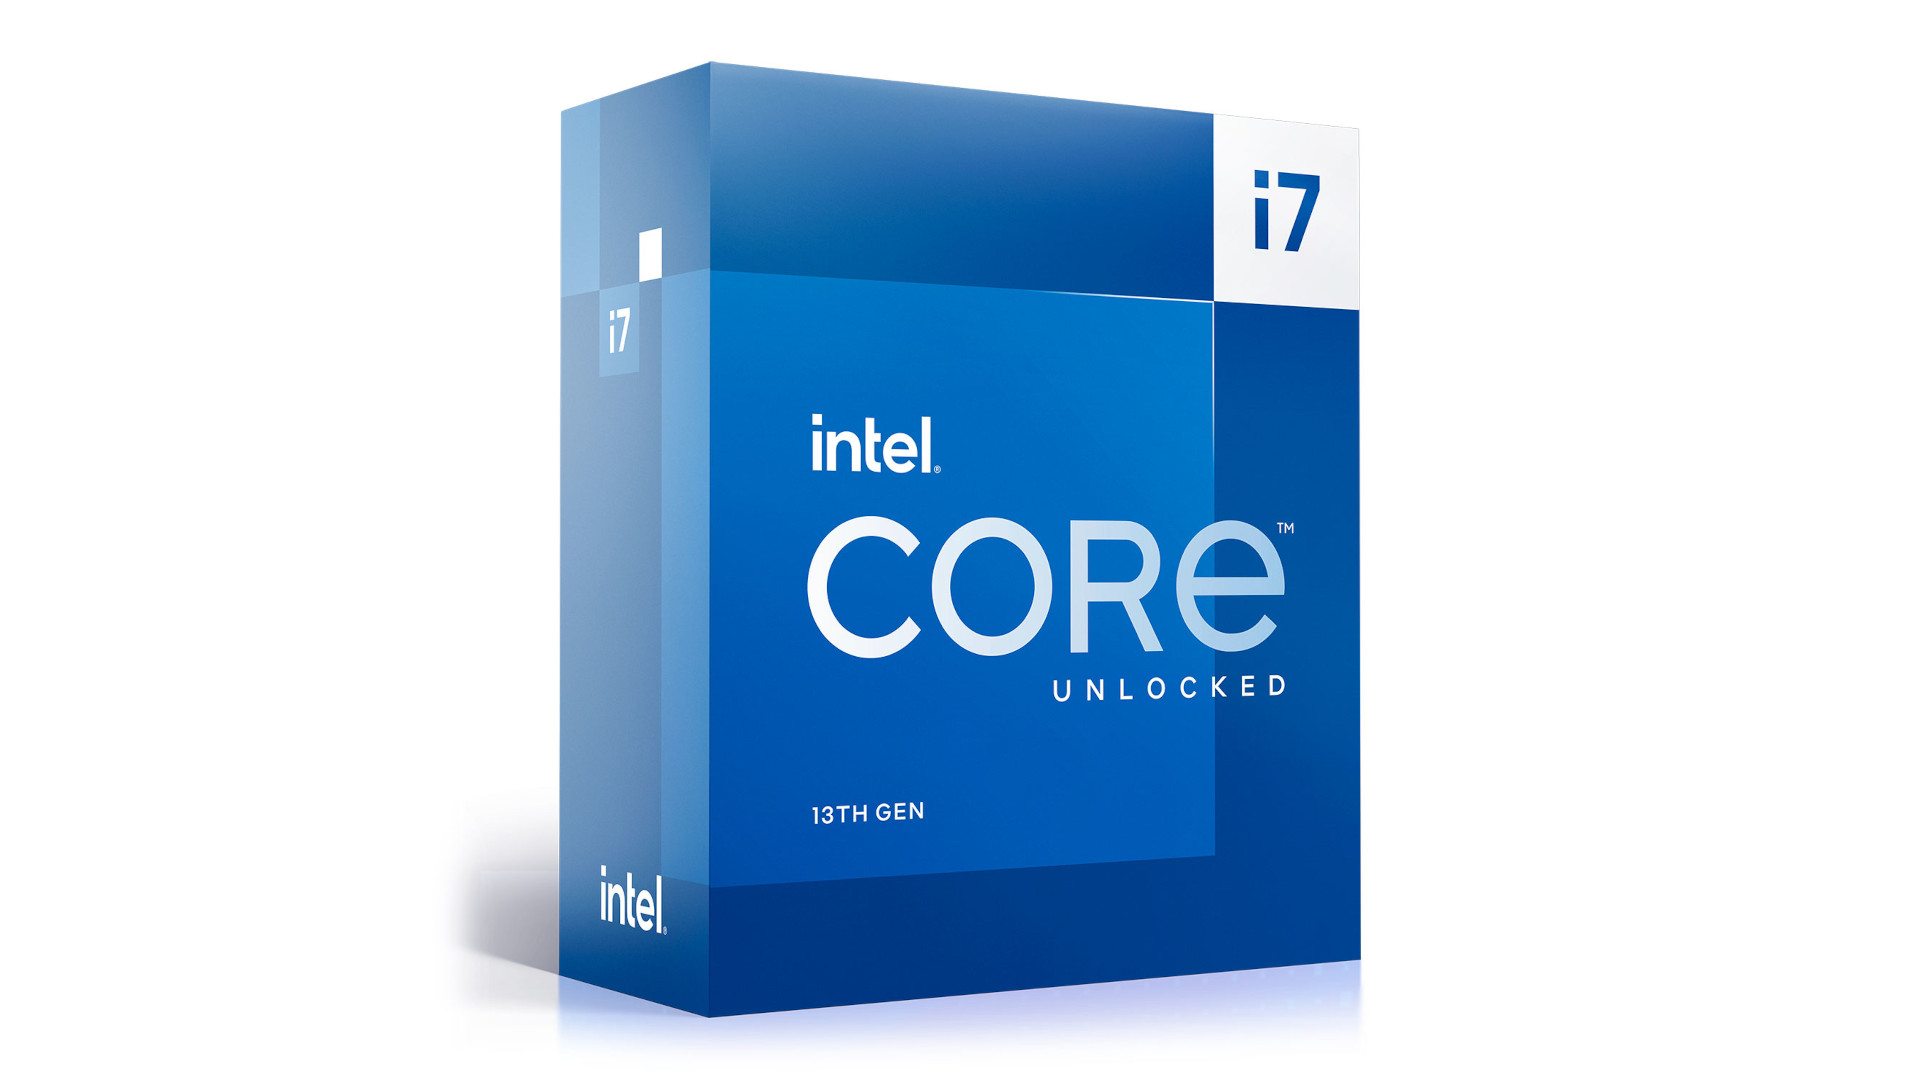 Die beste CPU zum Streaming ist der Intel Core i7 13700K